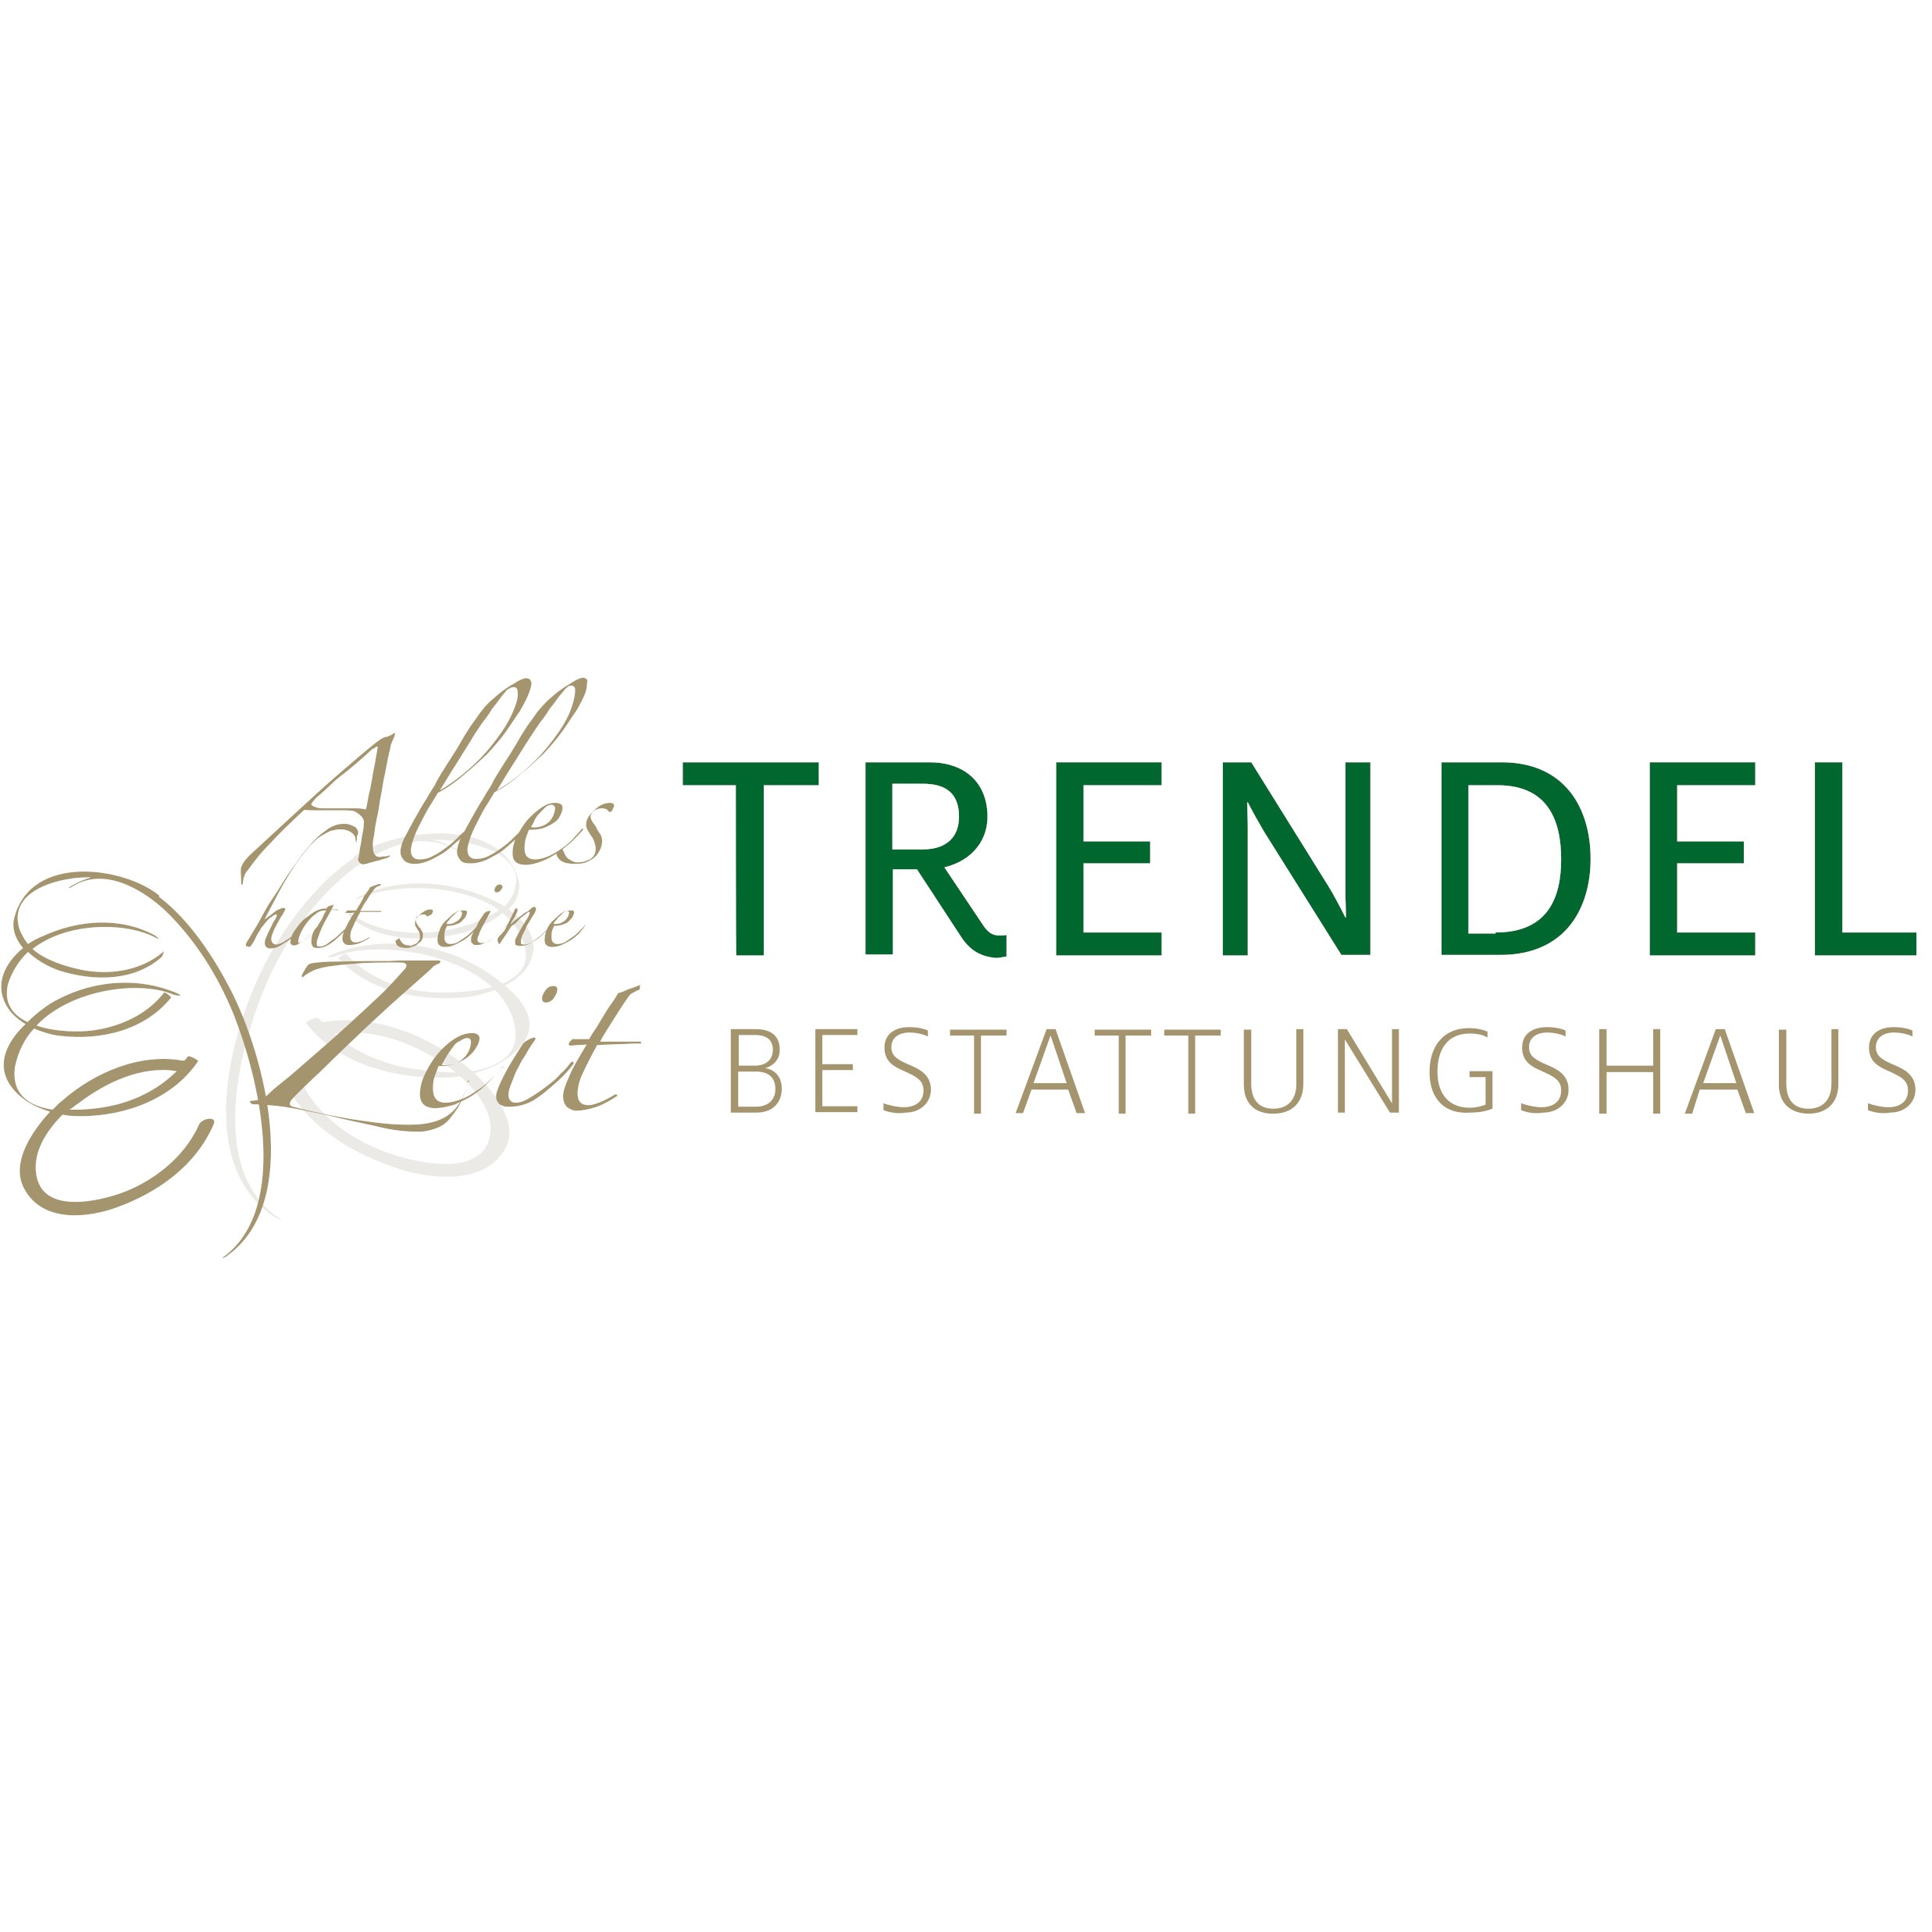 Logo von Bestattungshaus Trendel